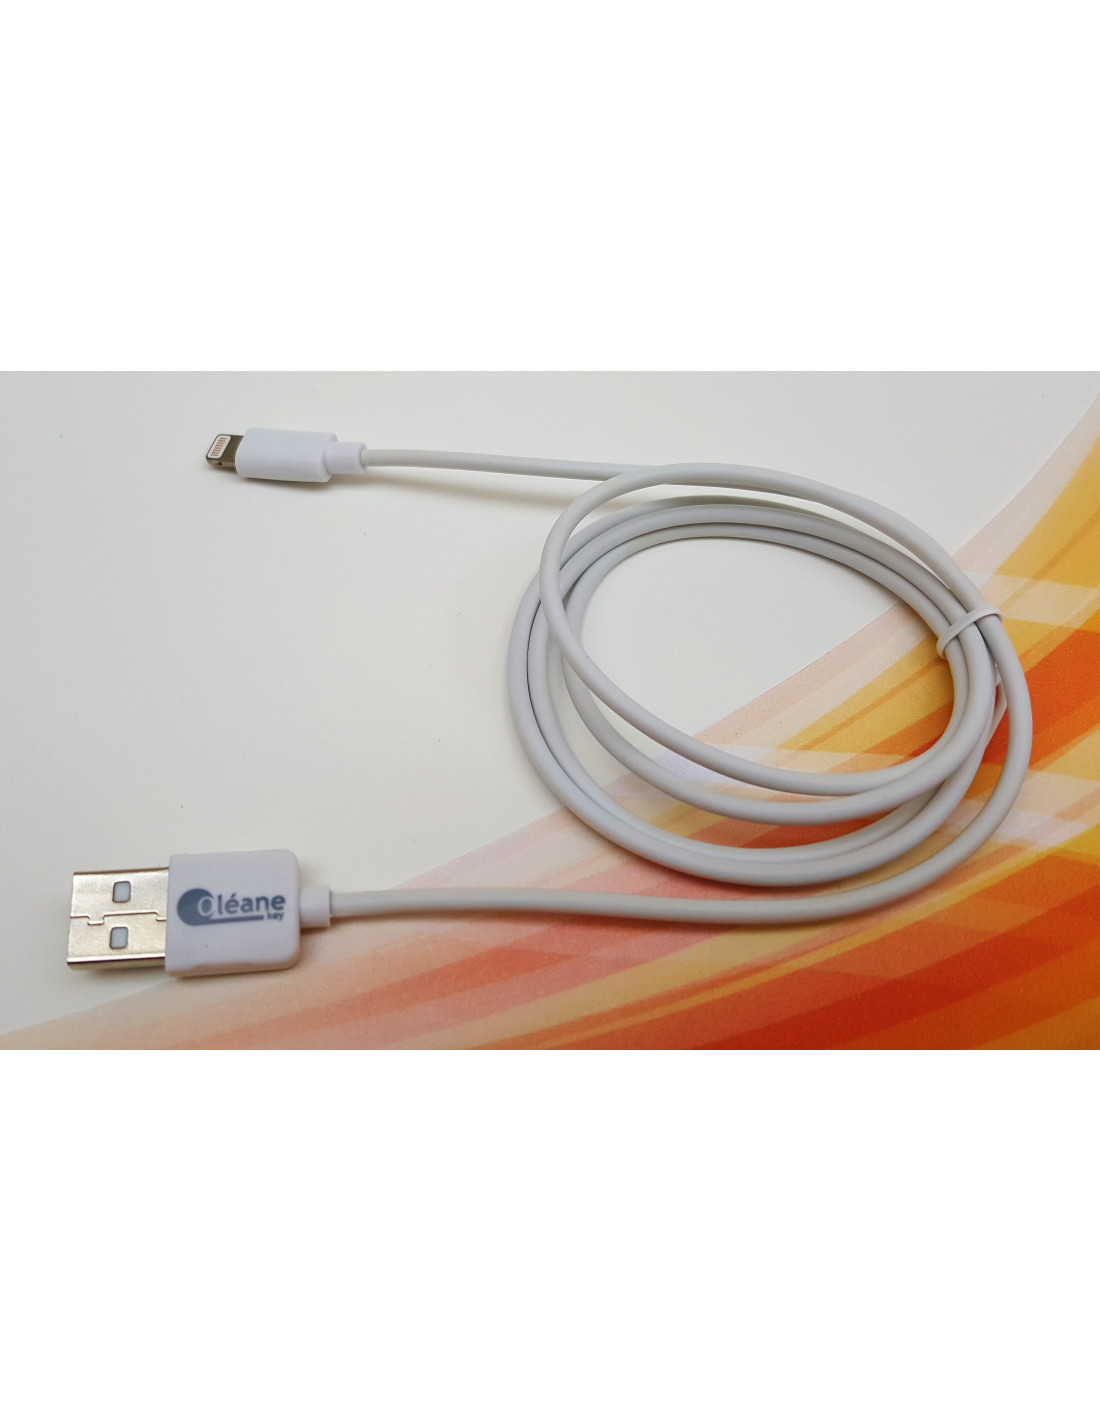 Câble de CHARGE et SYNCHRONISATION Type-C vers Lightning certifié MFI Apple  1m Oléane key